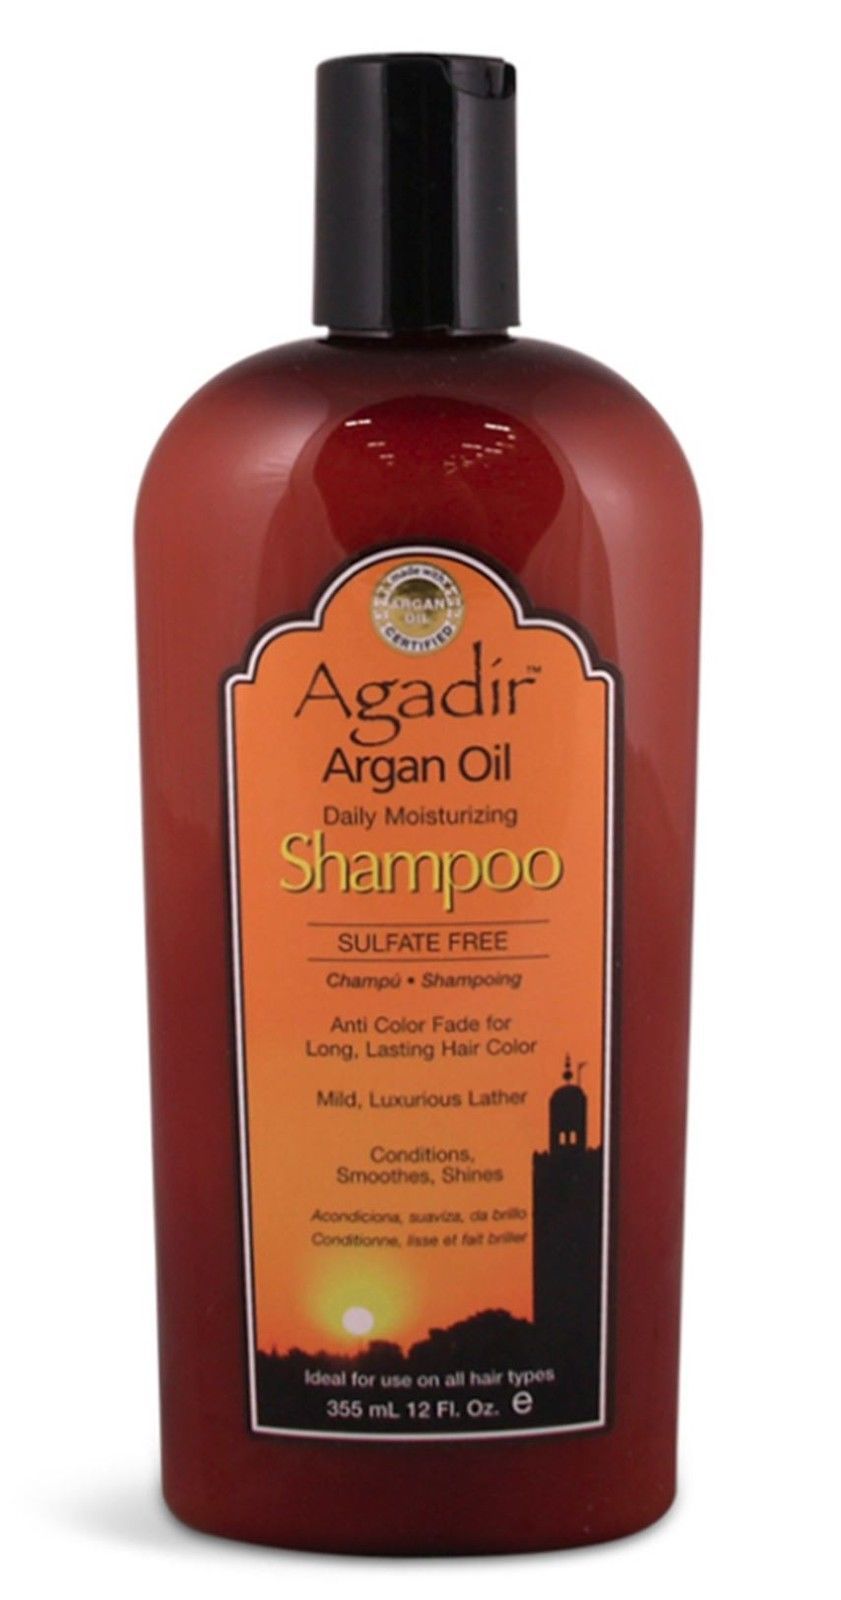 Agadir Argan Oil Daily Moisturizing Shampoo 12oz - $23.95